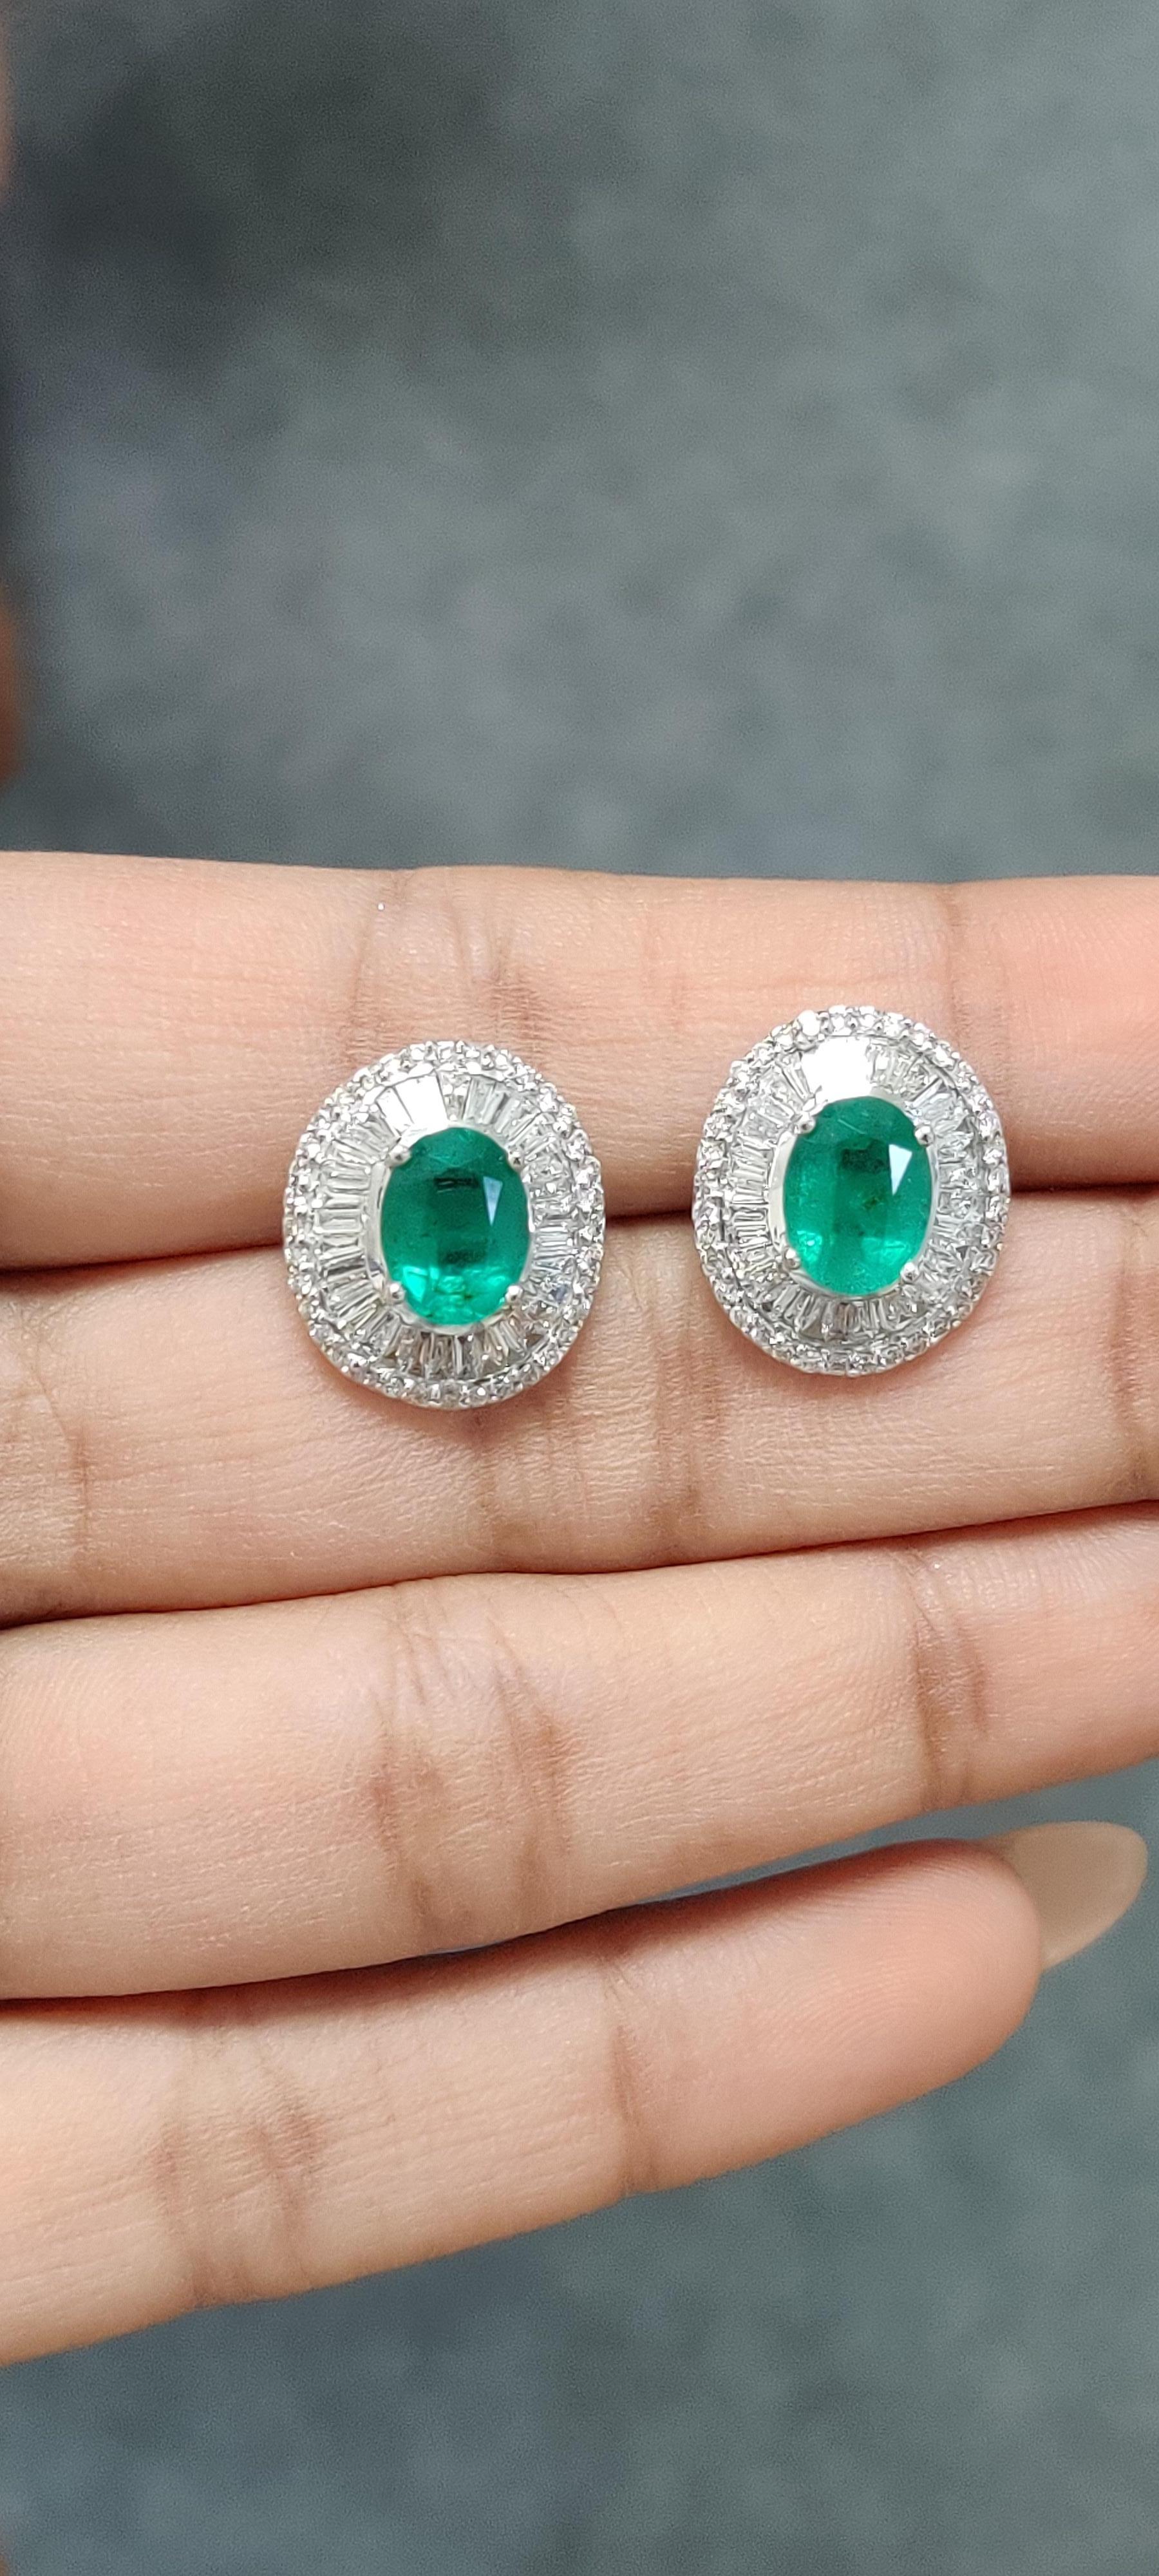 Baguette Cut 2.77 Ct Zambian Emerald & Diamonds studded Statement Stud Earrings in 18K Gold For Sale